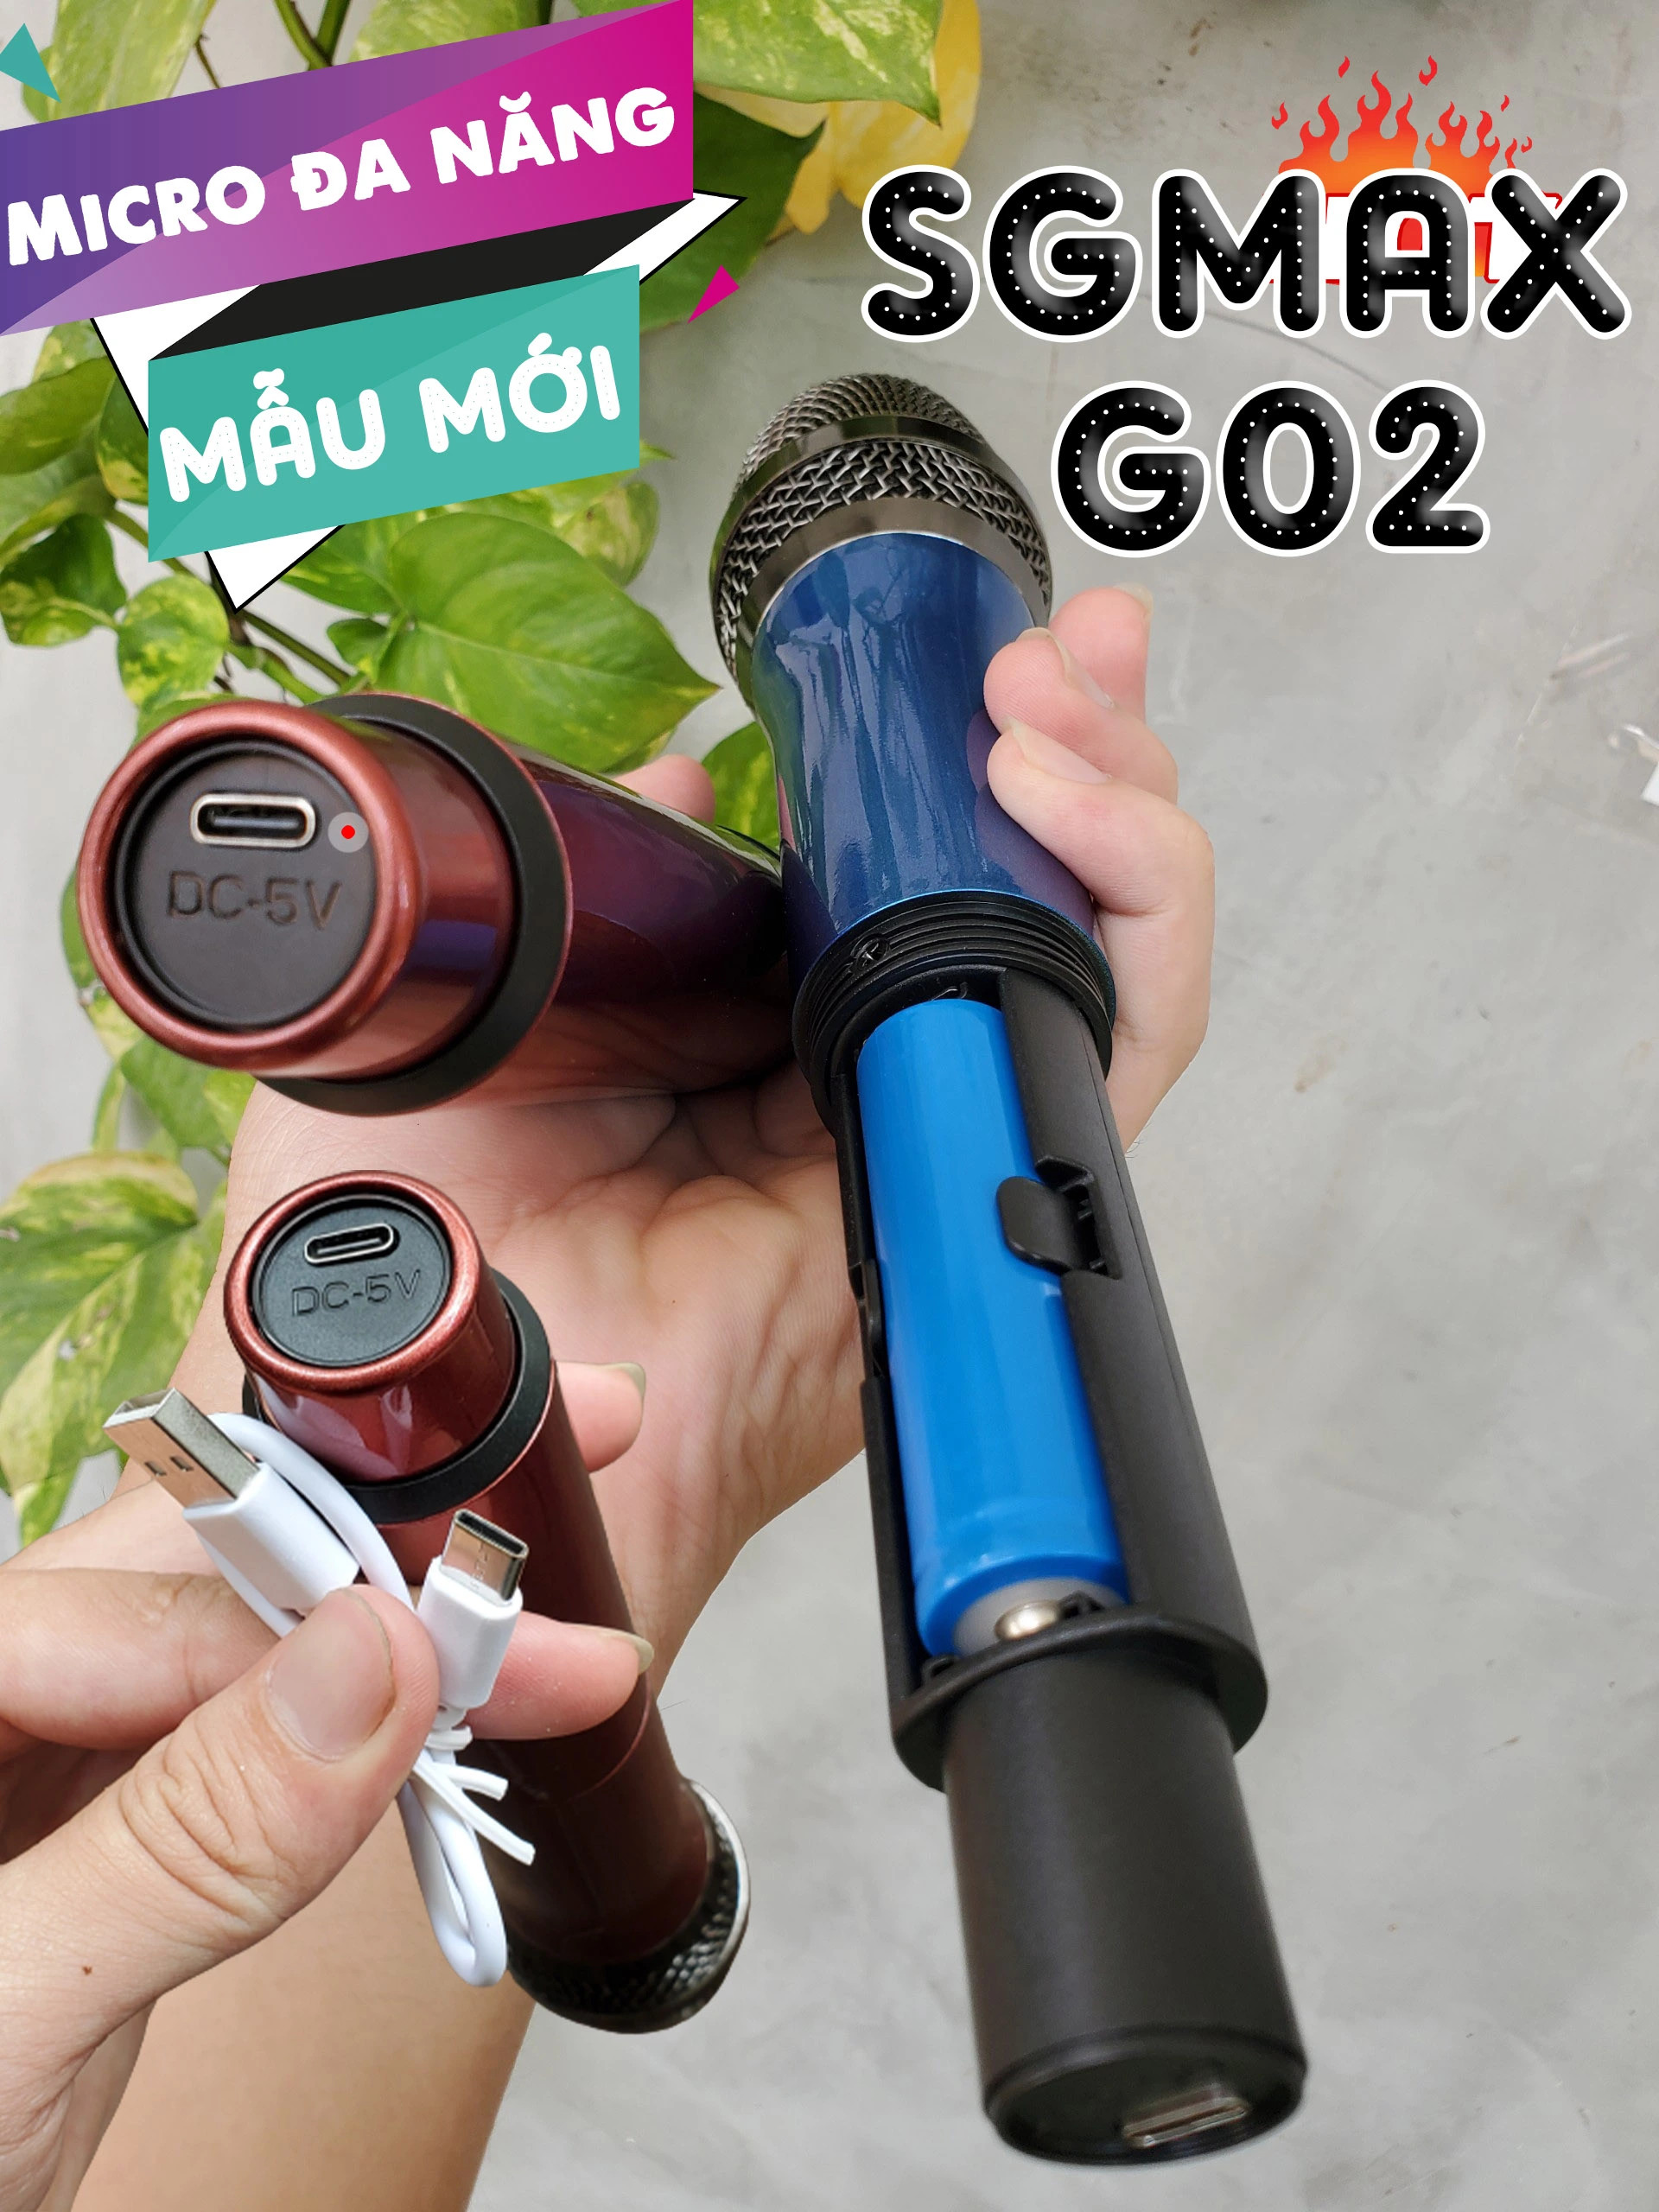 Combo 2 Micro Không Dây karaoke SGMAX G02 Chuyên Dùng Cho loa kéo, amply siêu hay mic dùng pin sạc tiện lợi micro nhẹ hút âm chống hú tốt